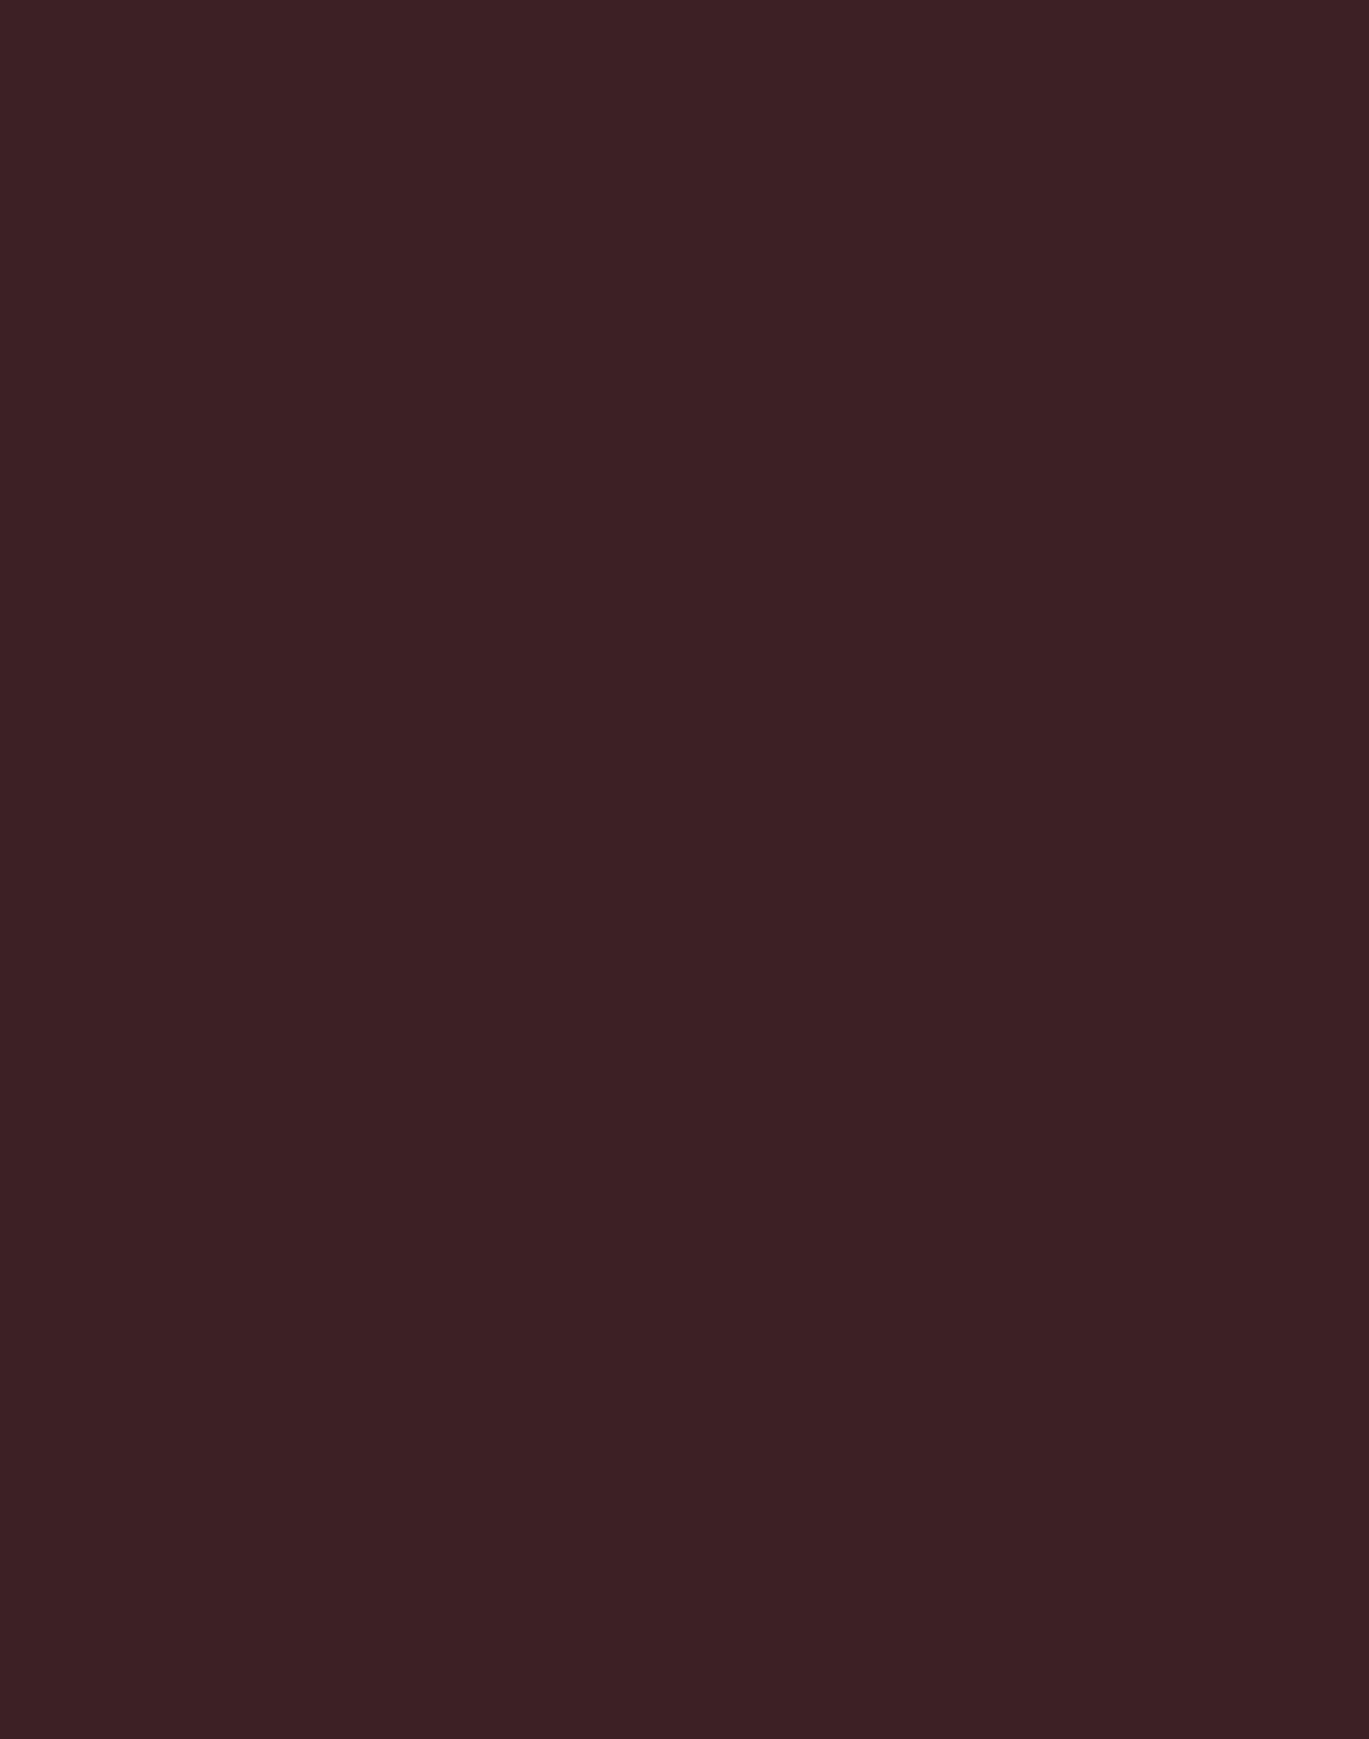 Илья Репин. Портрет композитора Антона Рубинштейна. 1881. ГТГ